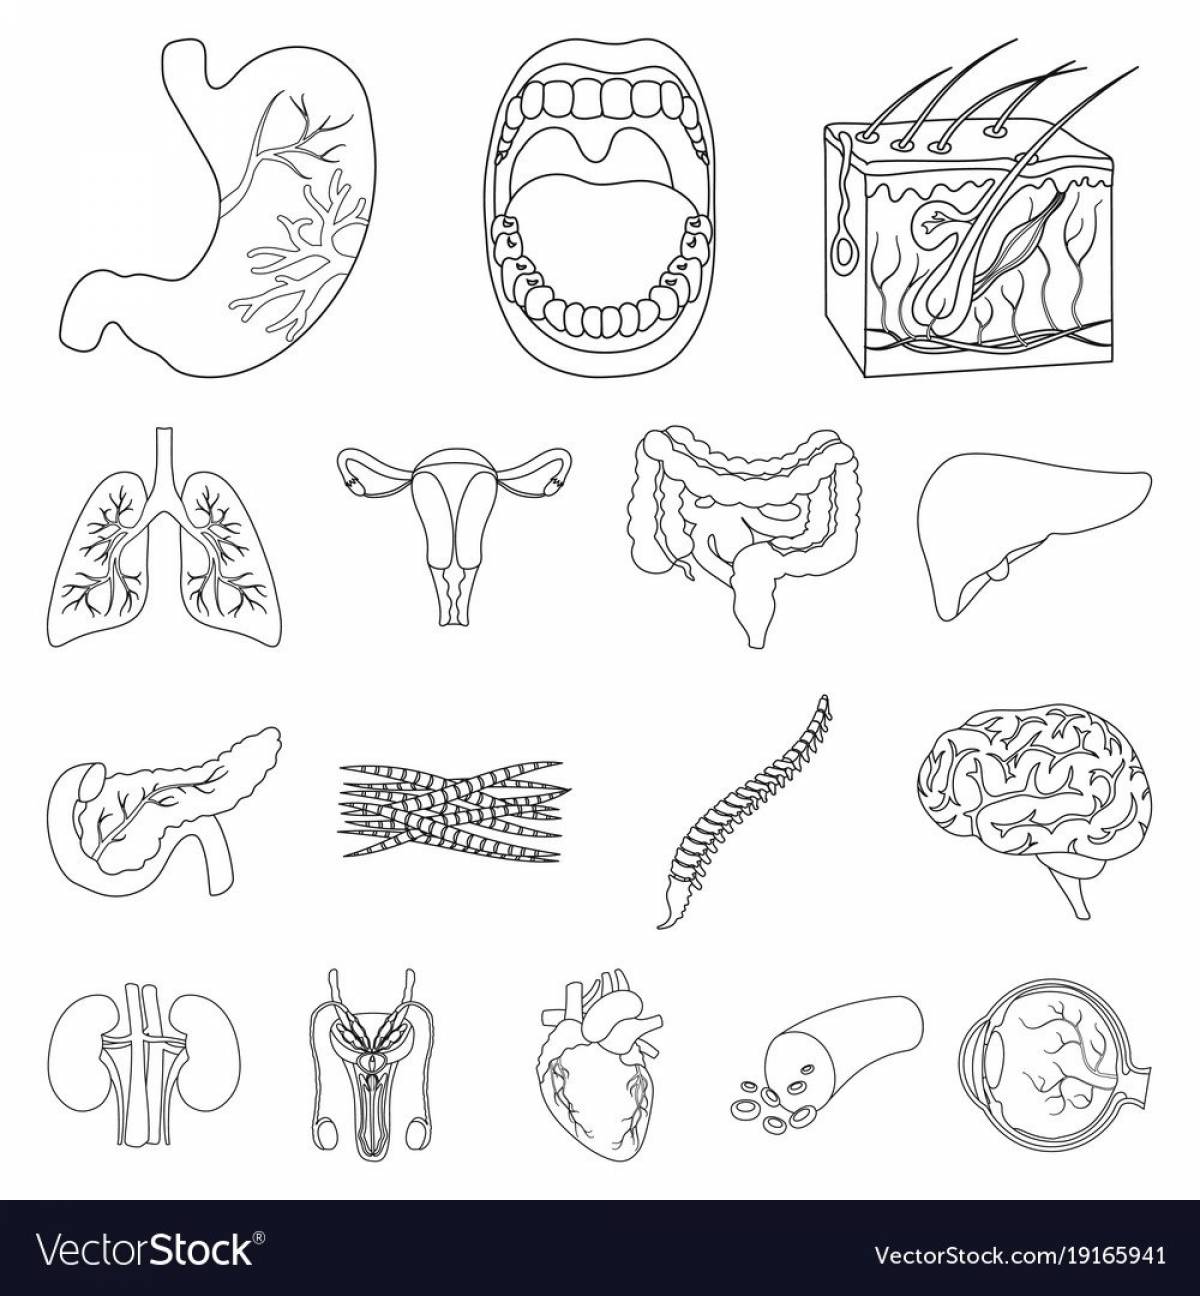 Human structure internal organs #12